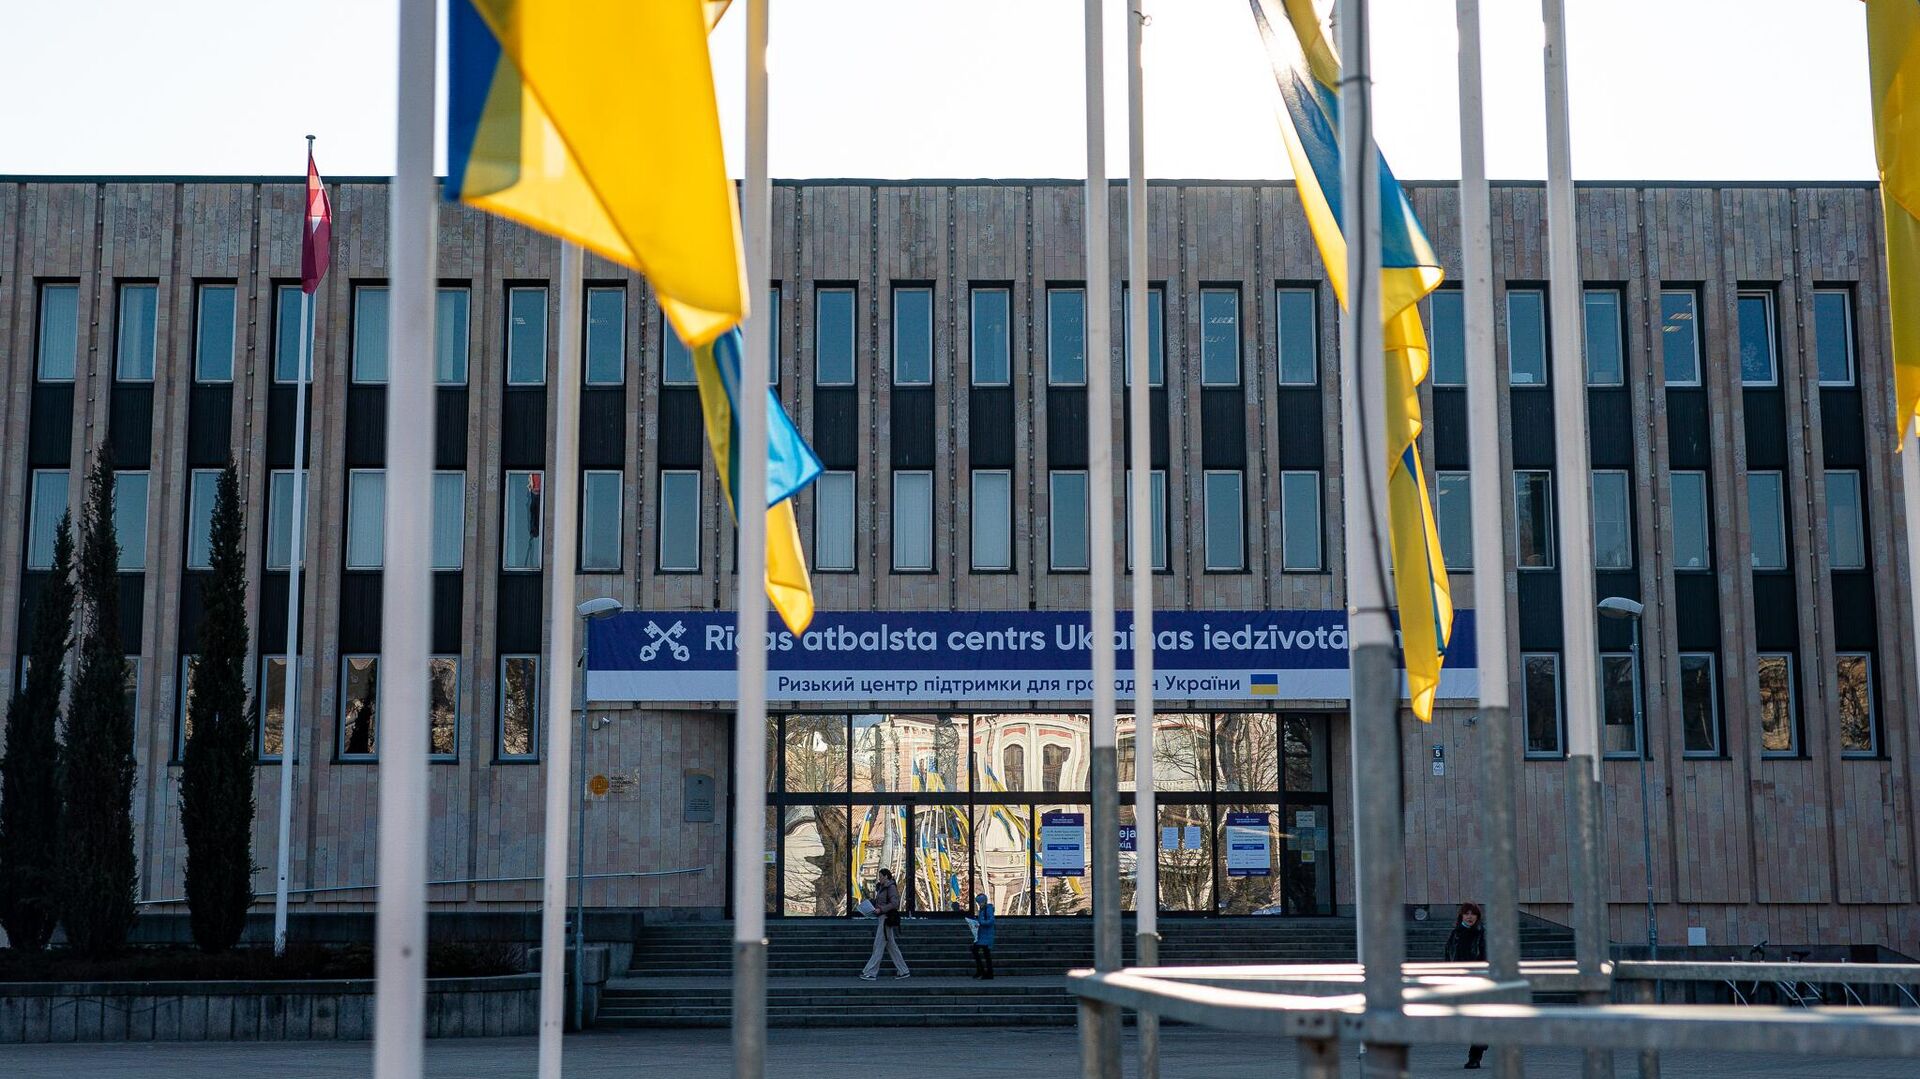 Рижский центр поддержки граждан Украины в здании Дома конгрессов в Риге - Sputnik Латвия, 1920, 13.04.2022